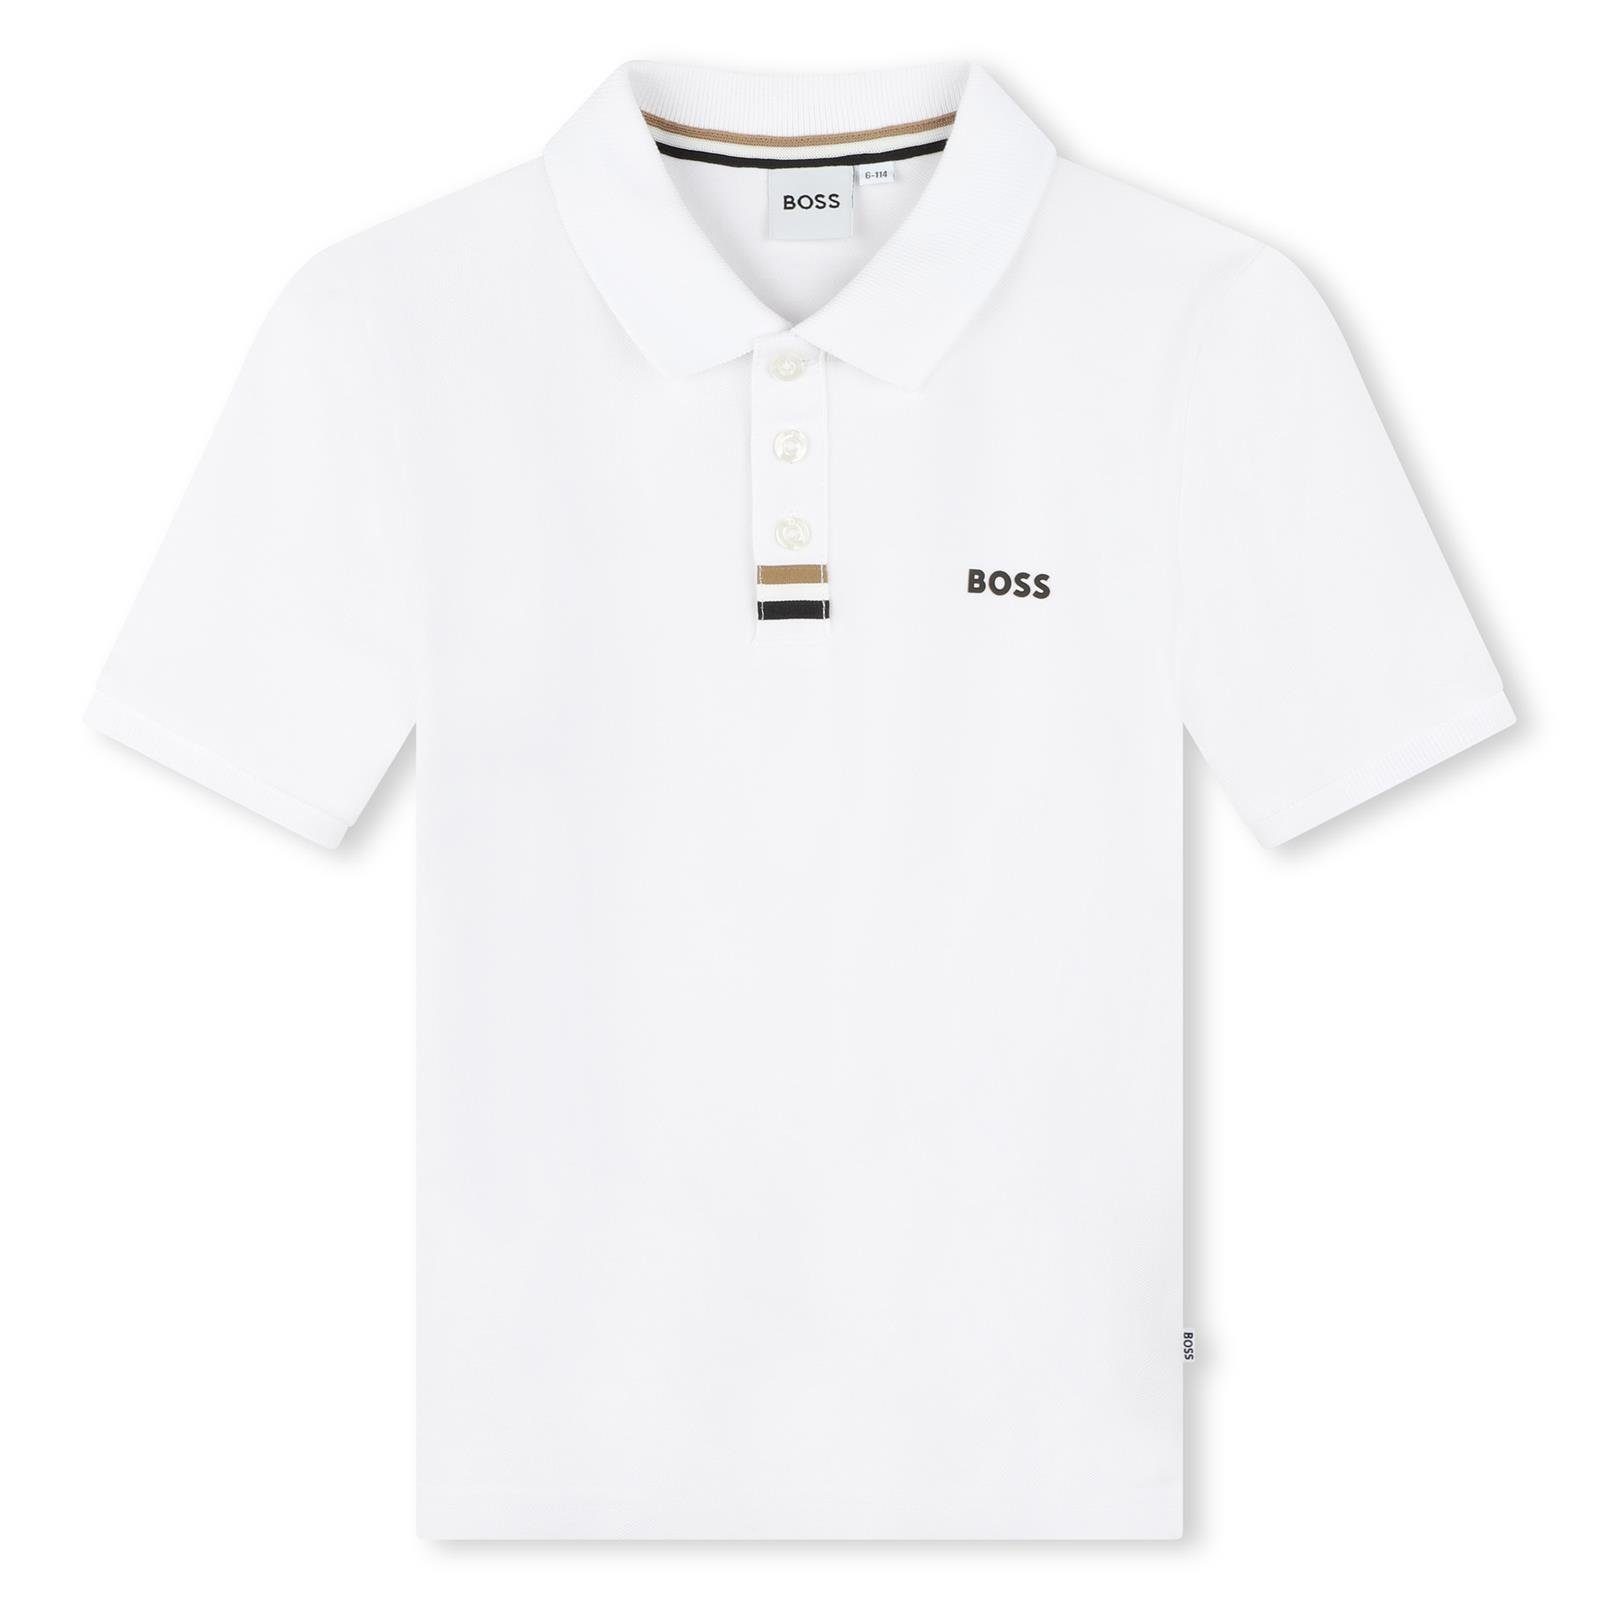 BOSS Poloshirt BOSS Kids Poloshirt weiß mit schwarzem Logo